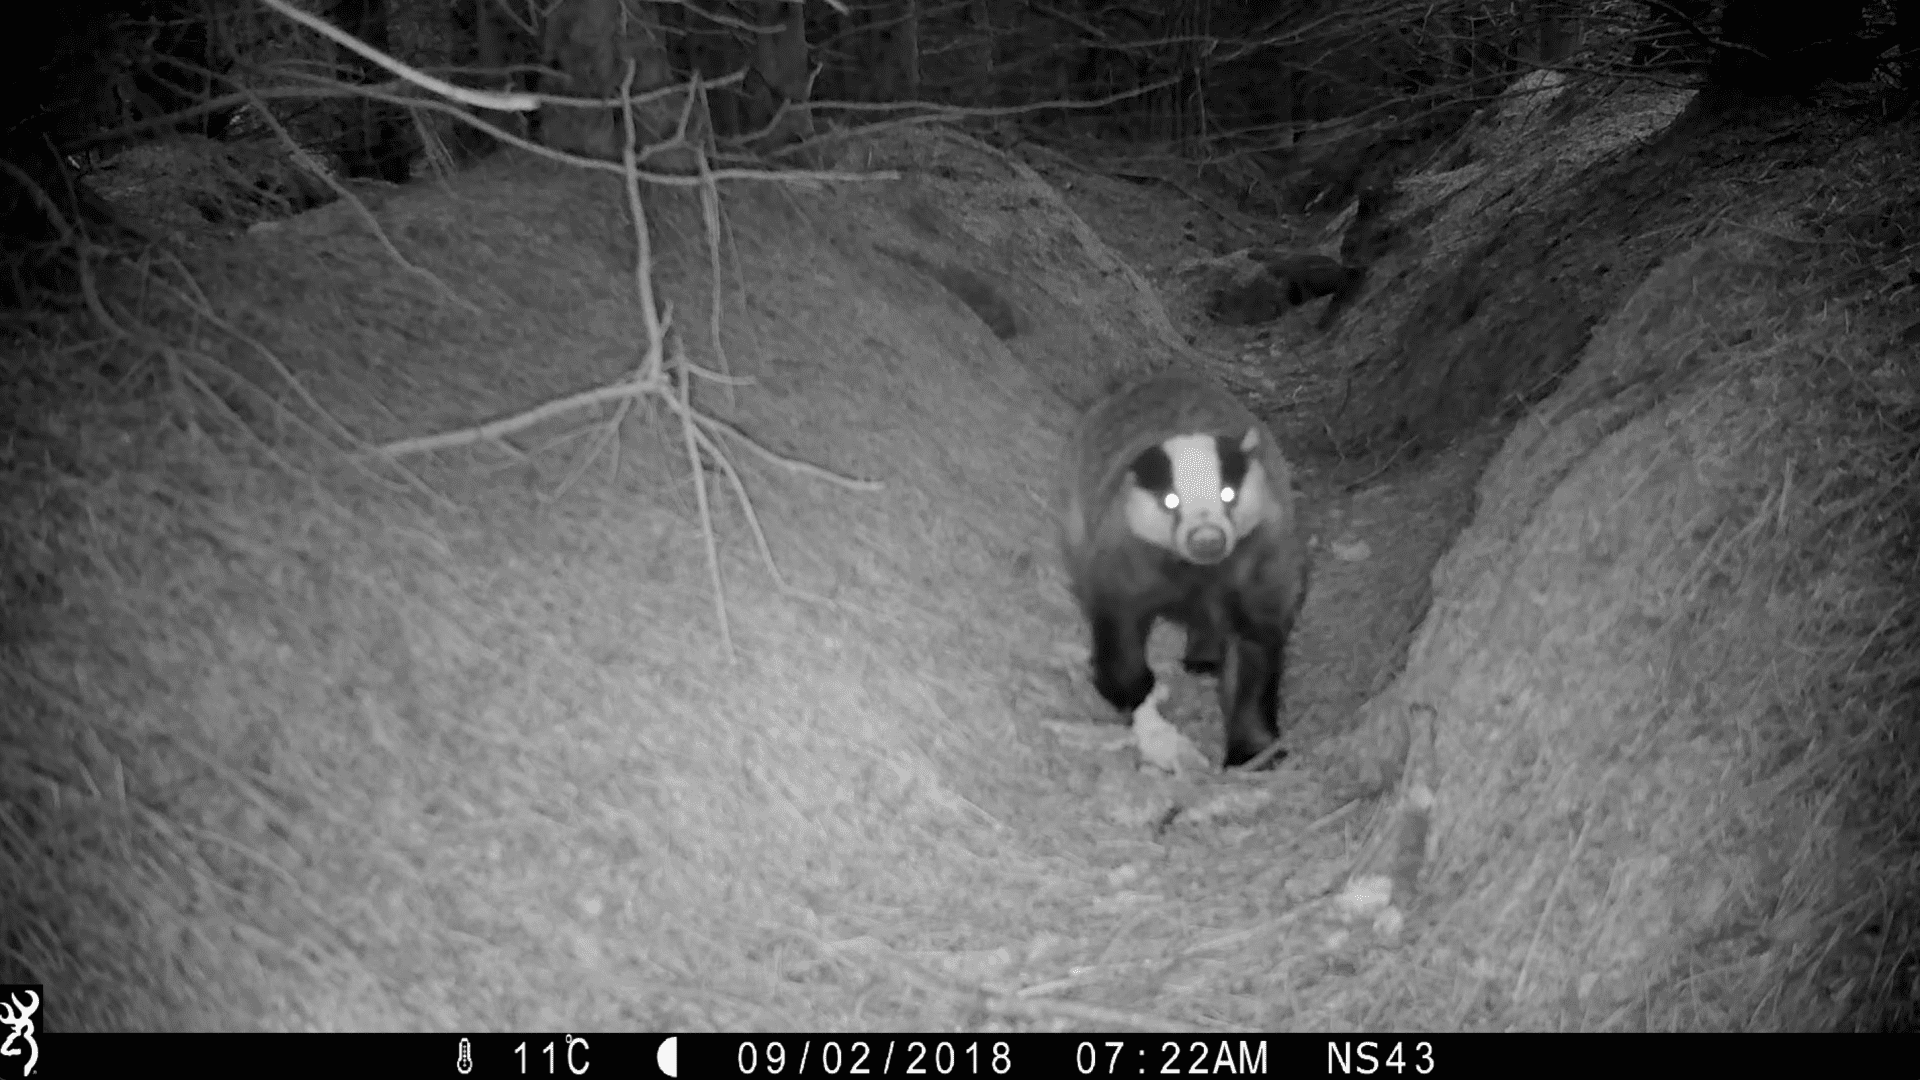 Badger looking directly at camera